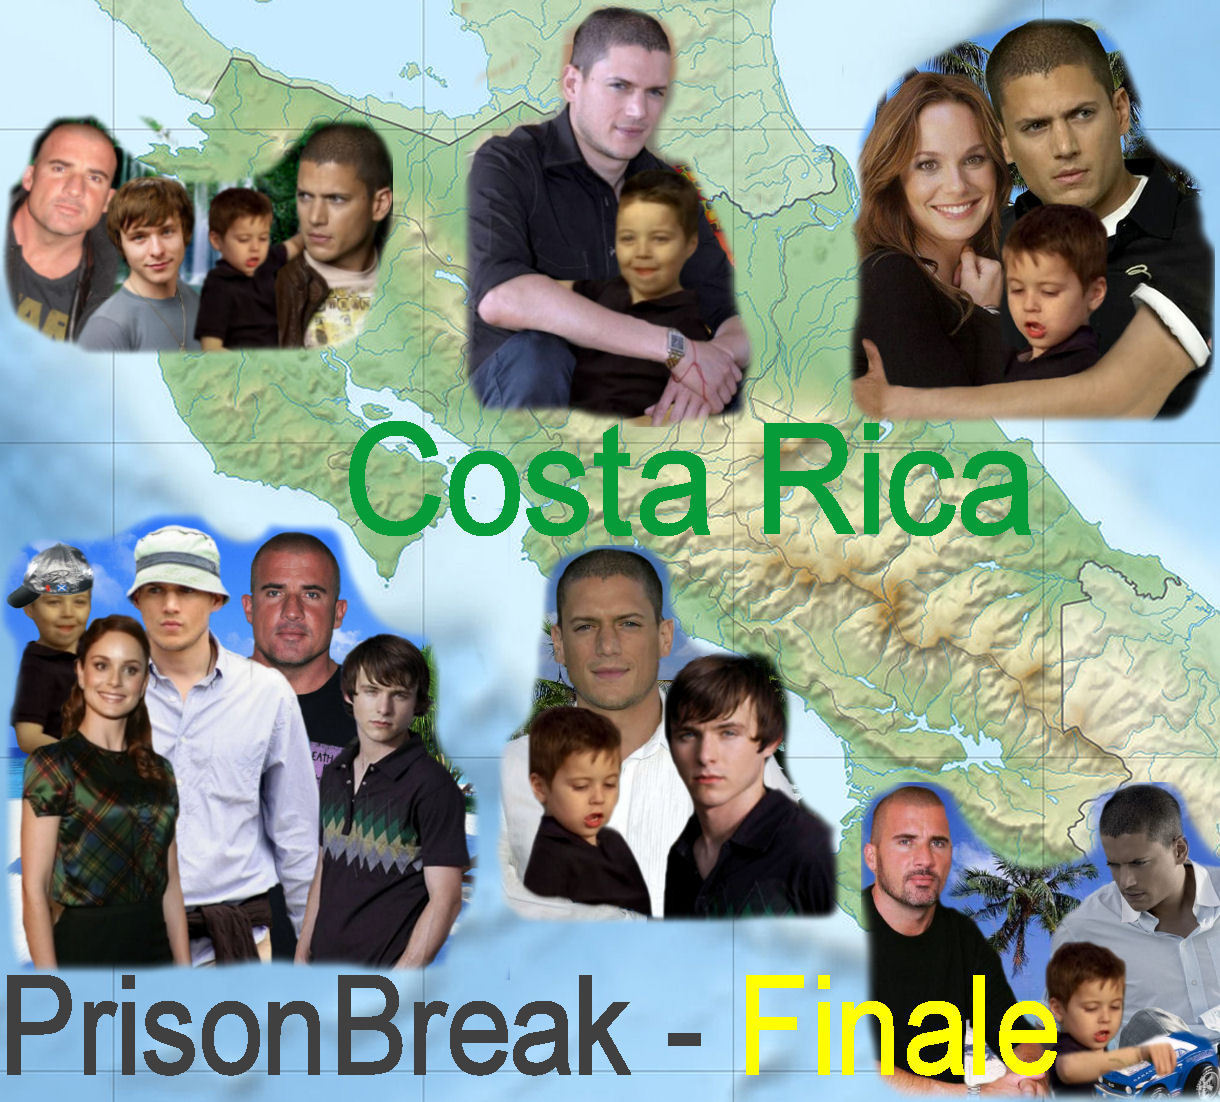 Prison Break - Finale - Costa Rica